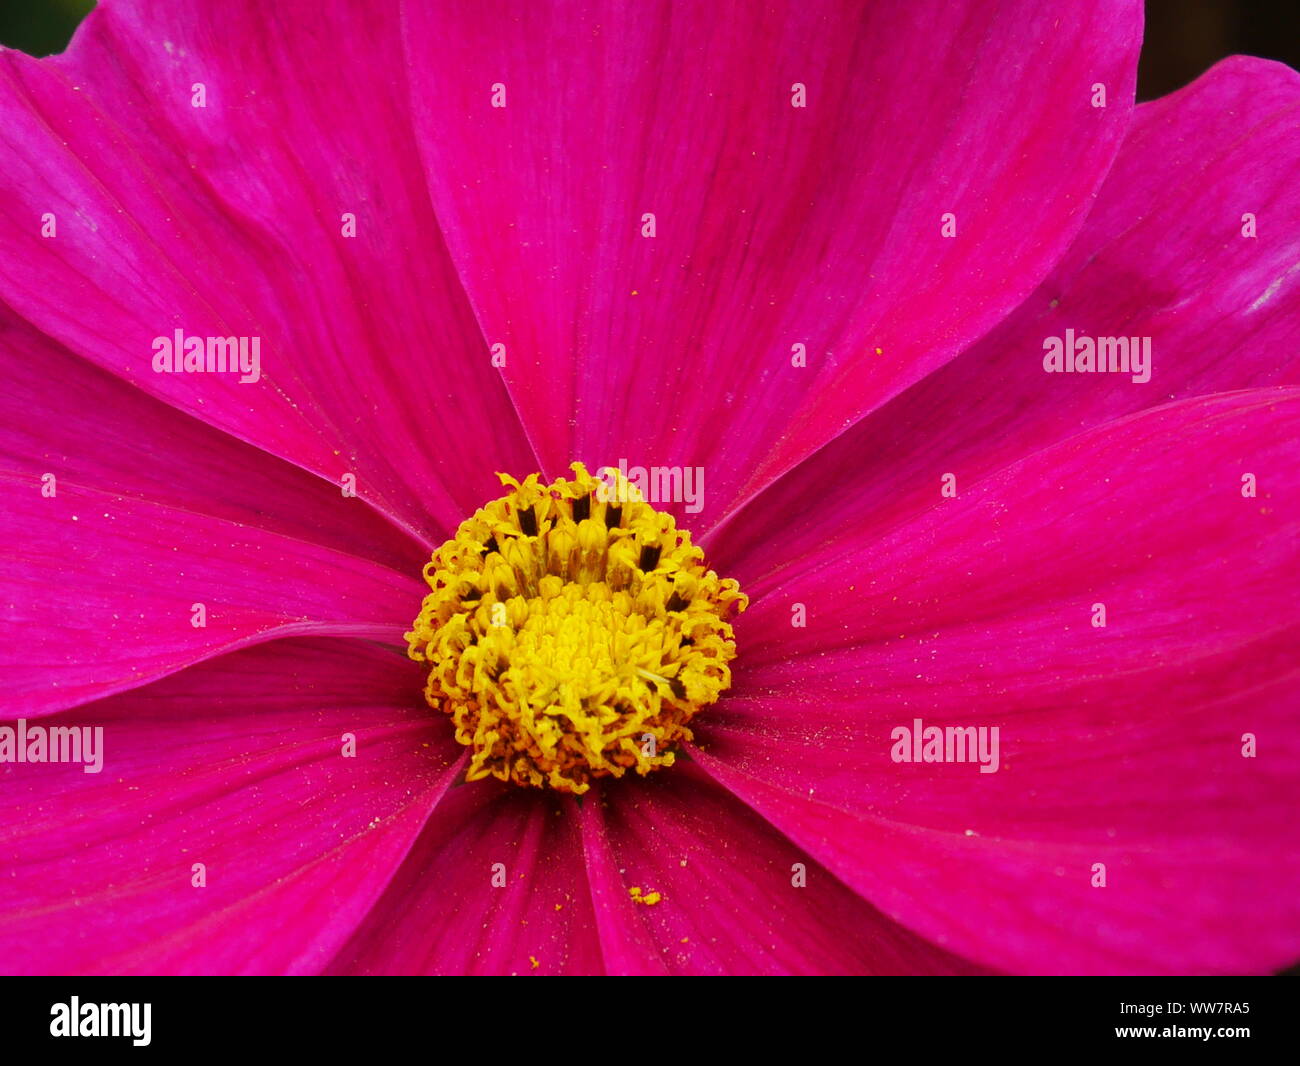 Gros plan d'une fleur cosmos rose vif avec centre jaune Banque D'Images